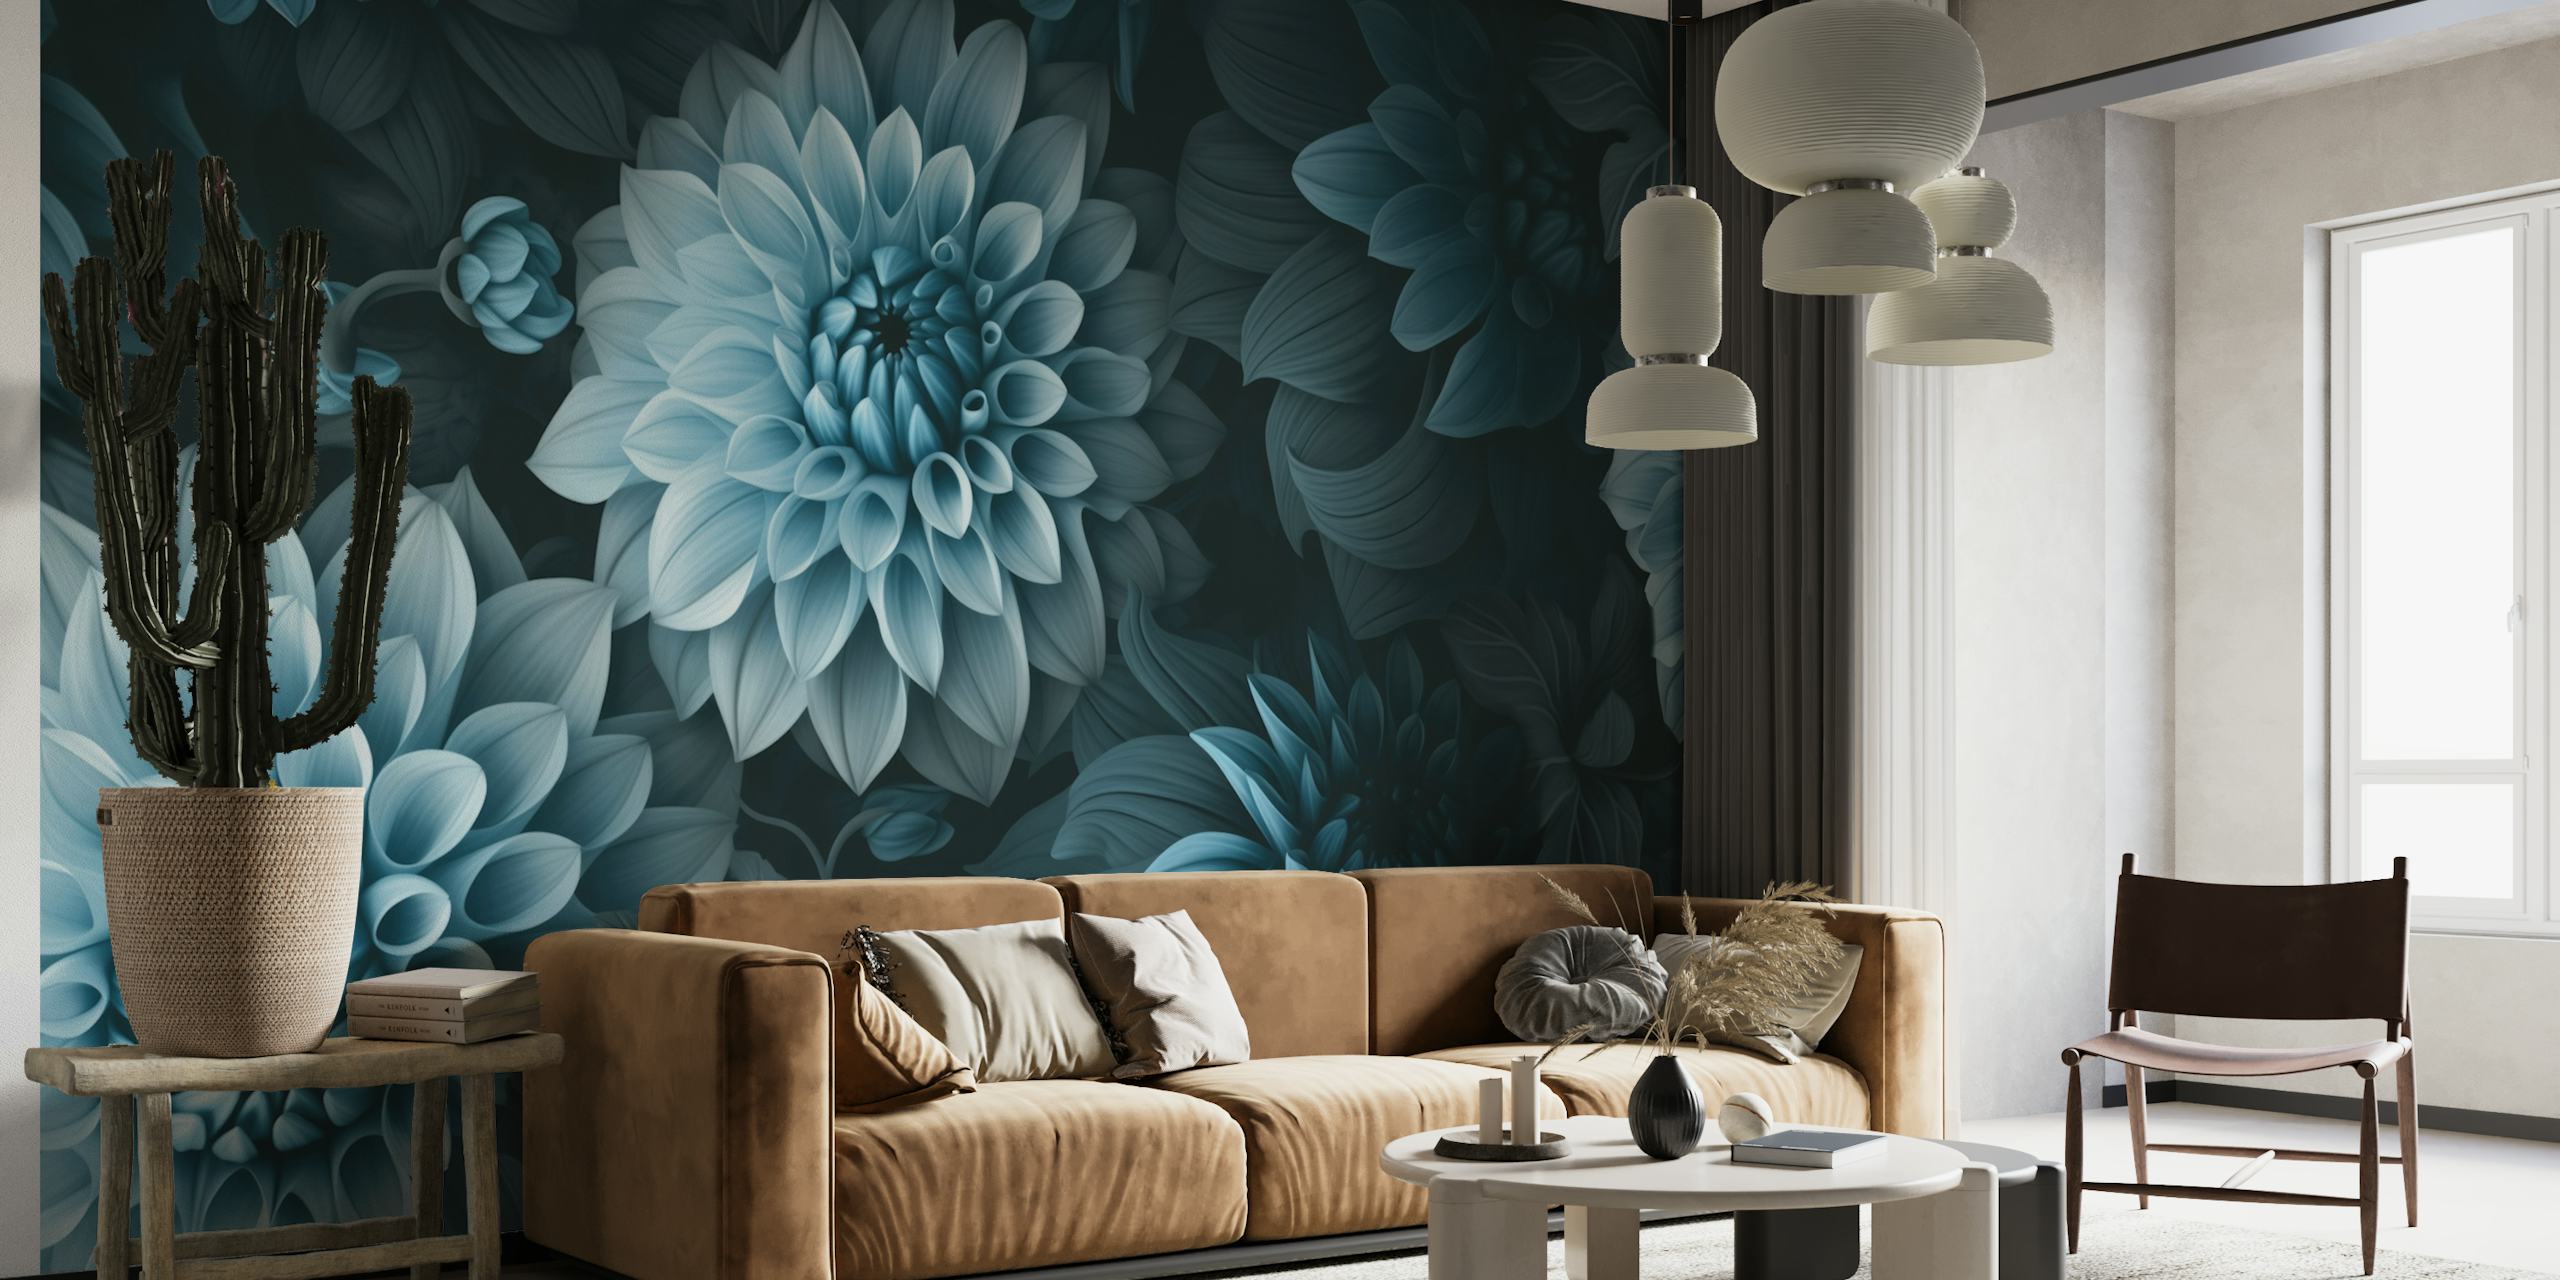 Mural de parede opulento Moody Dahlia Flowers com ricos tons de verde-azulado e azul